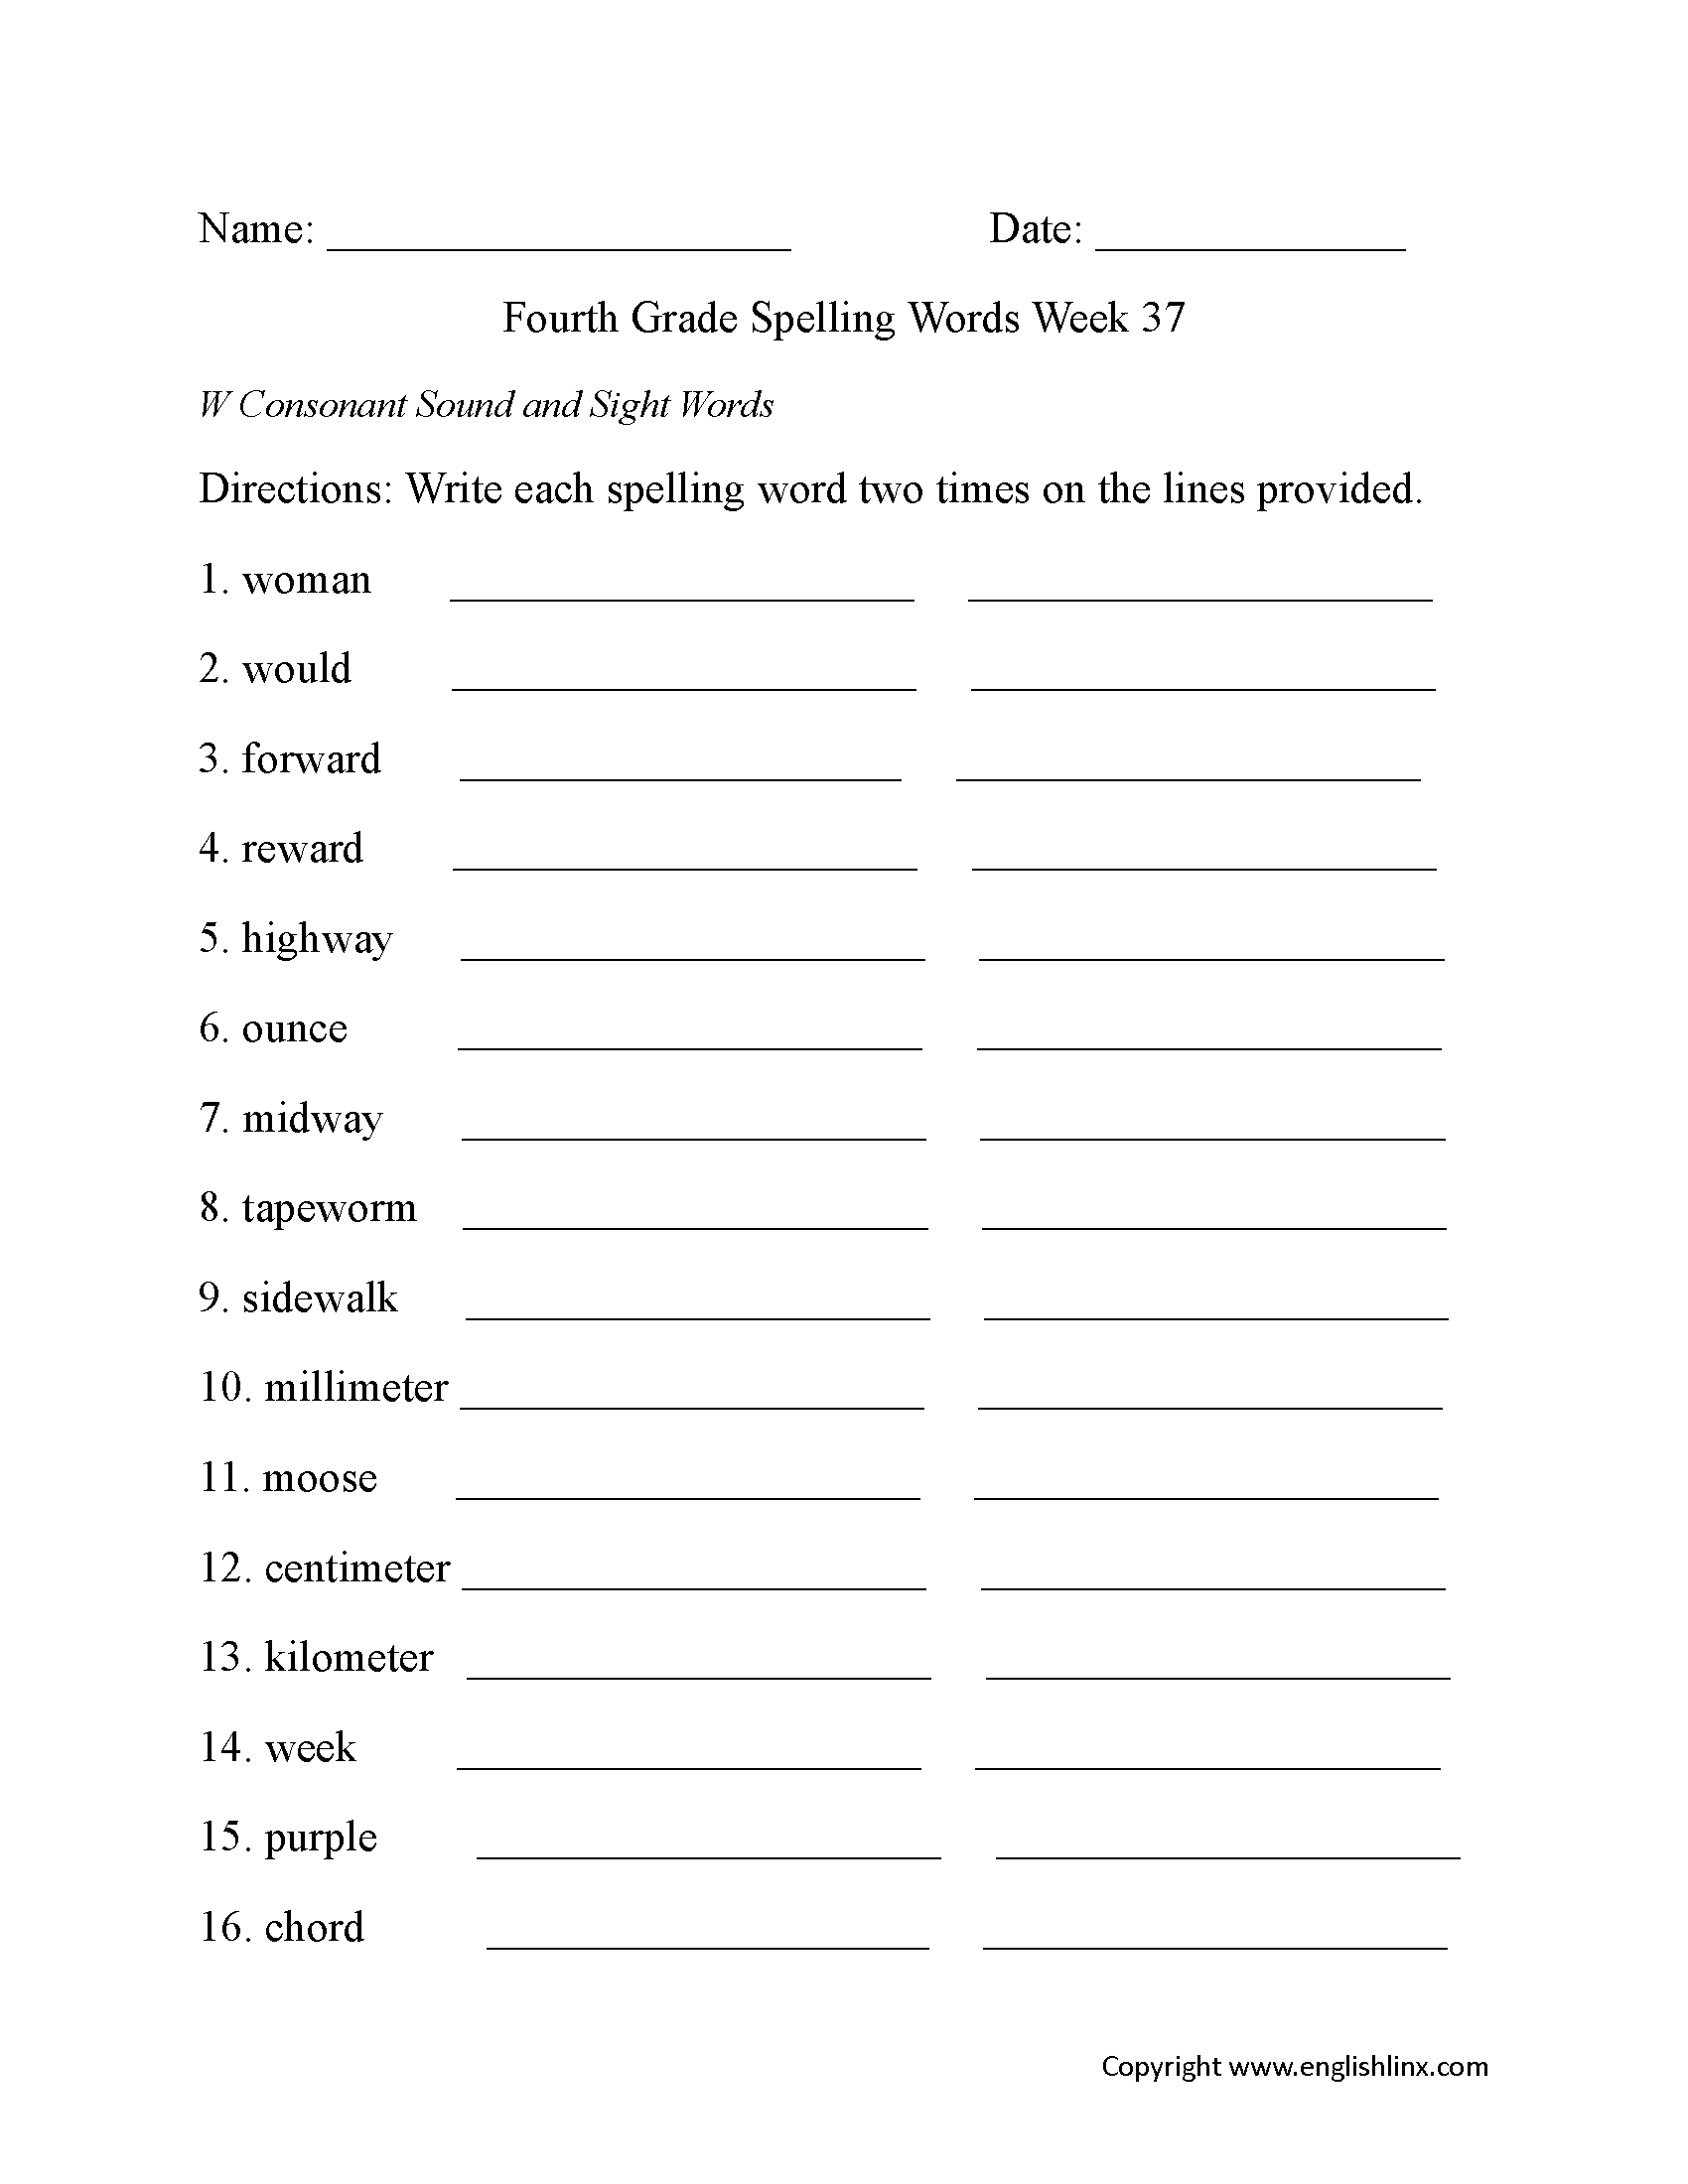 Spelling Worksheets | Fourth Grade Spelling Worksheets | Free Printable Spelling Worksheets For 5Th Grade